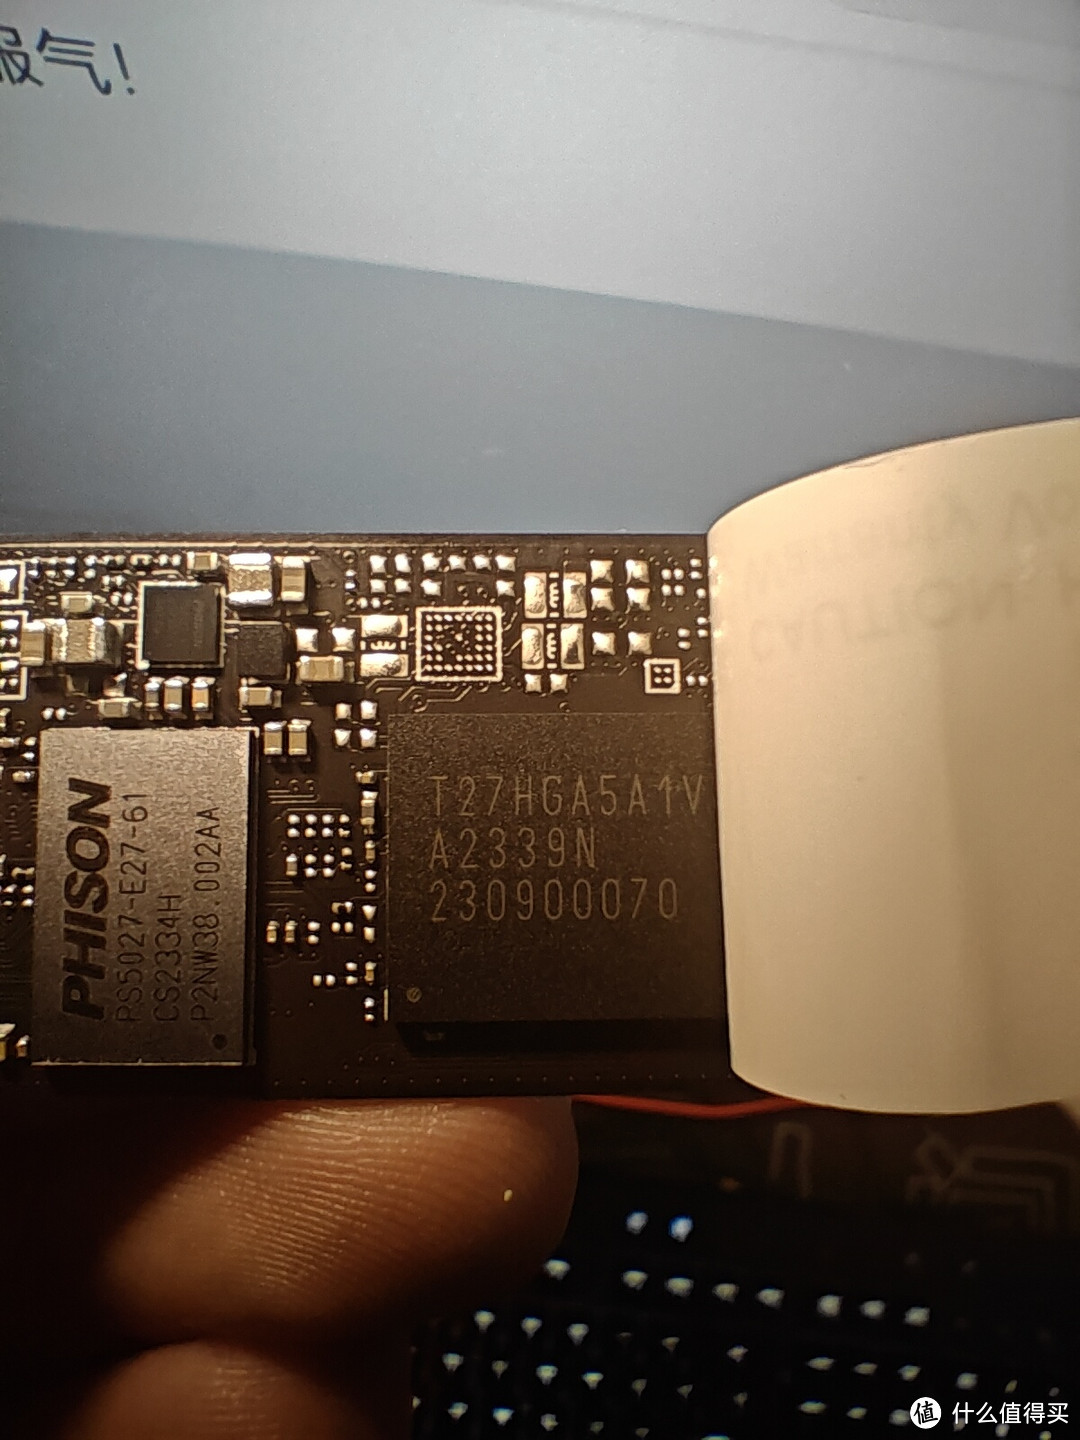 芯点子 C700 目前最便宜 7000m/s 固态硬盘简测